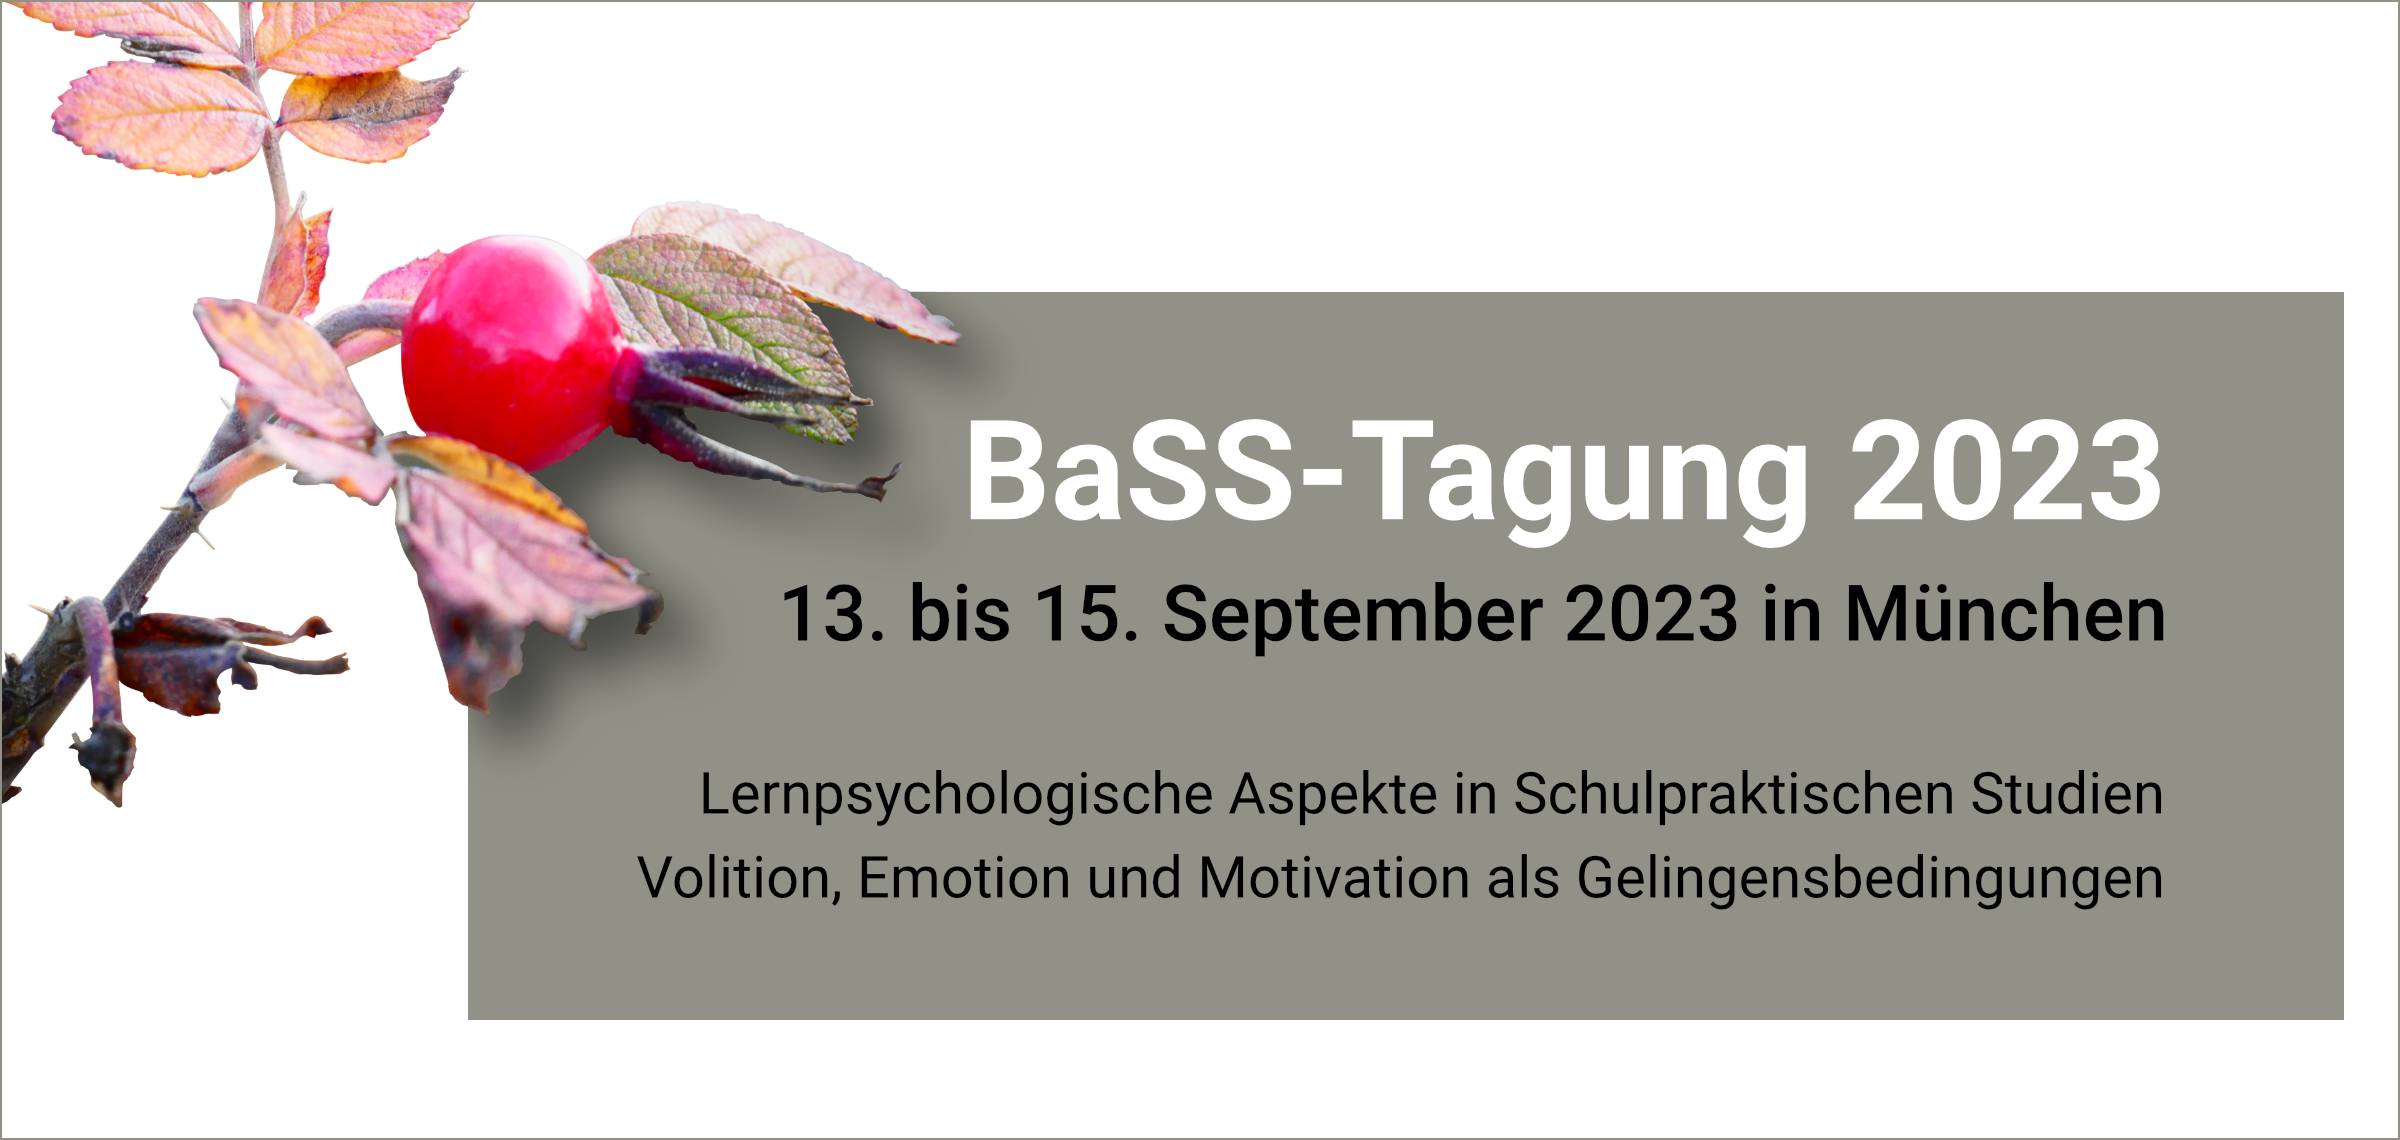 14.-15. September Tagung der BaSS 